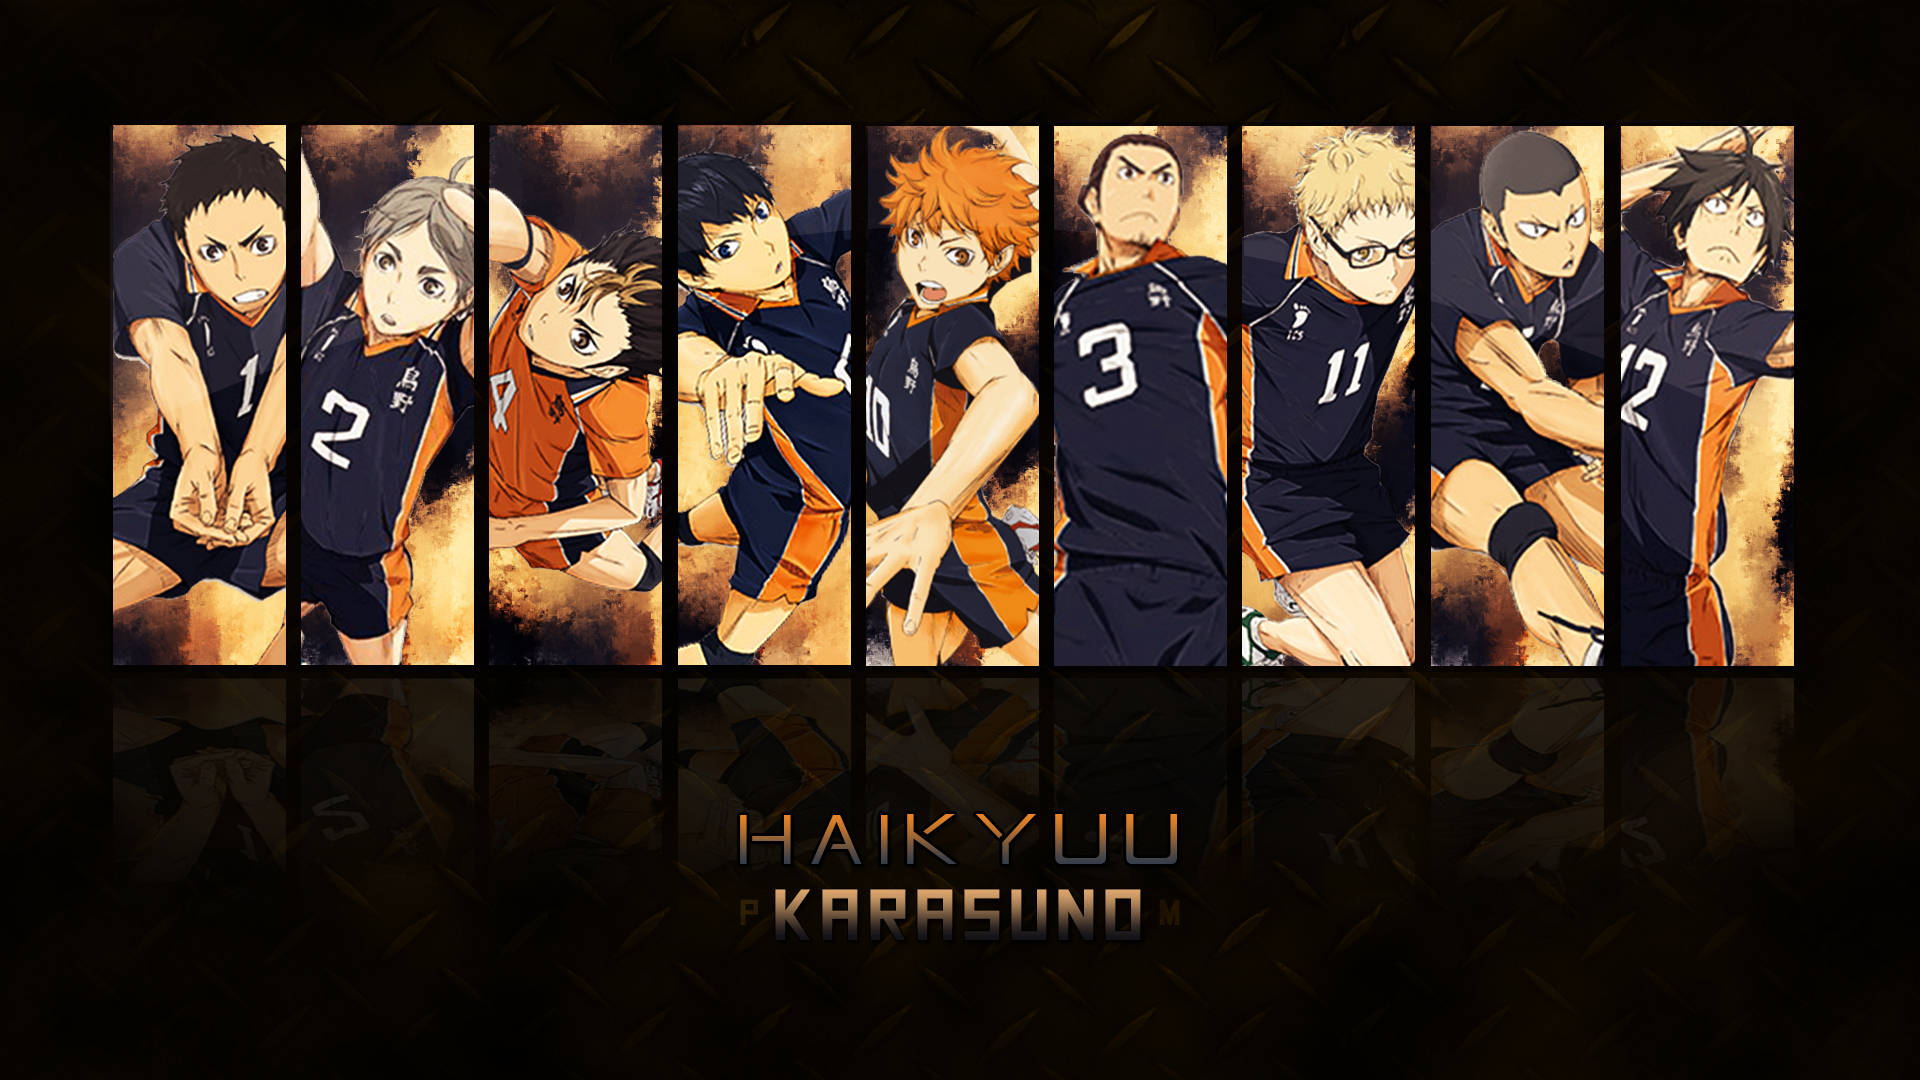 Download Haikyuu 4K Karasuno Game Mode Wallpaper